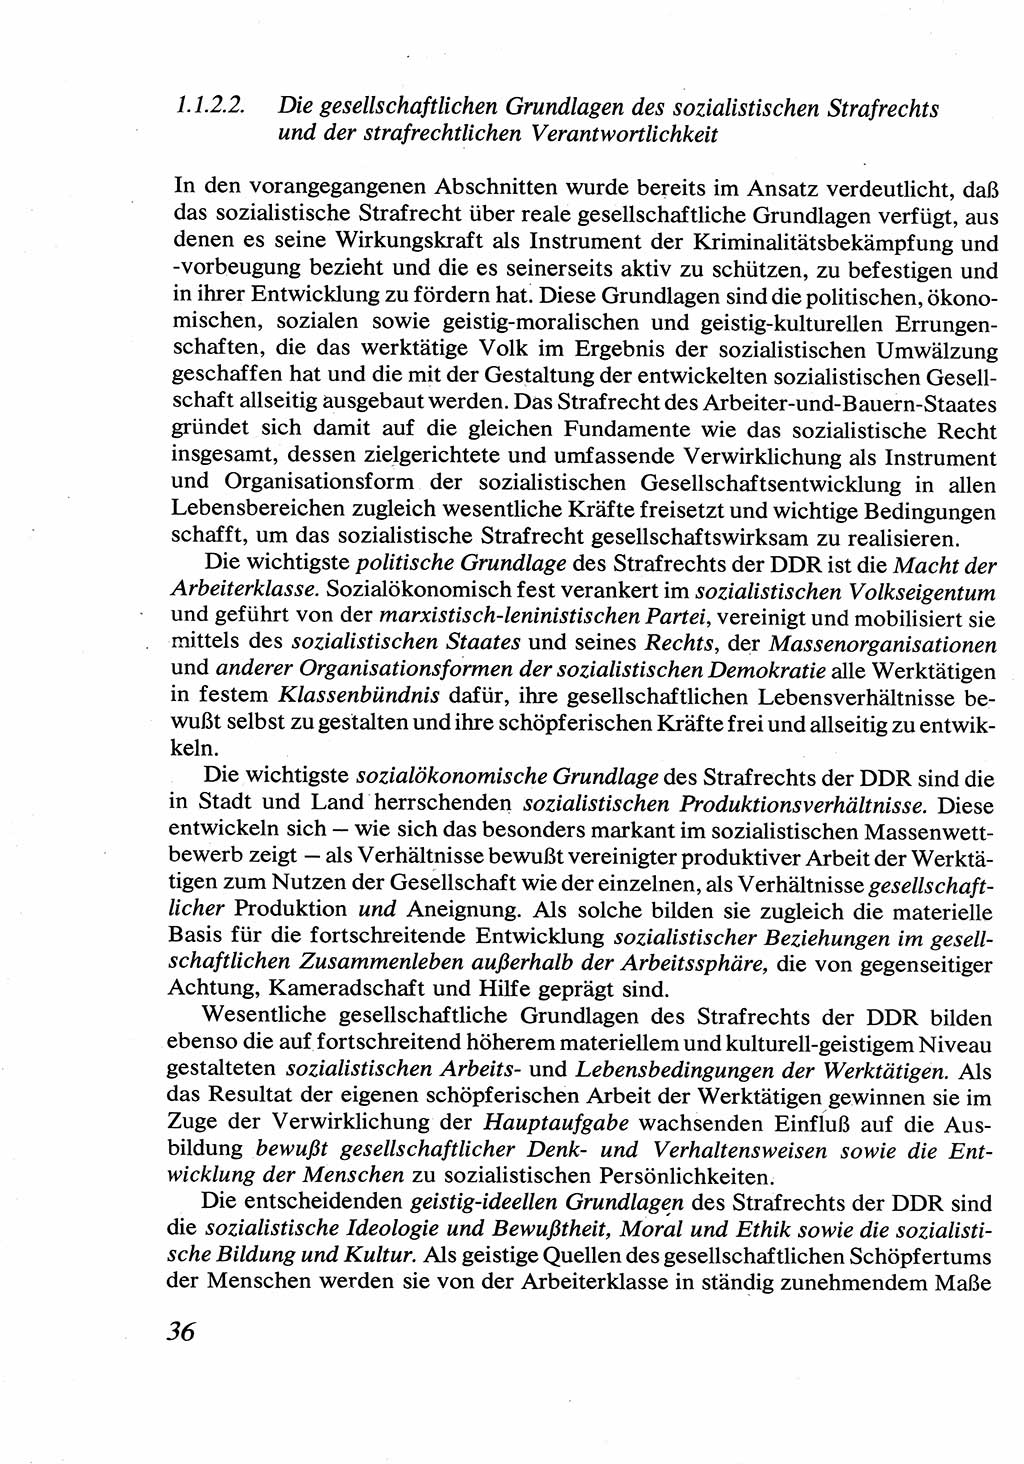 Strafrecht [Deutsche Demokratische Republik (DDR)], Allgemeiner Teil, Lehrbuch 1976, Seite 36 (Strafr. DDR AT Lb. 1976, S. 36)